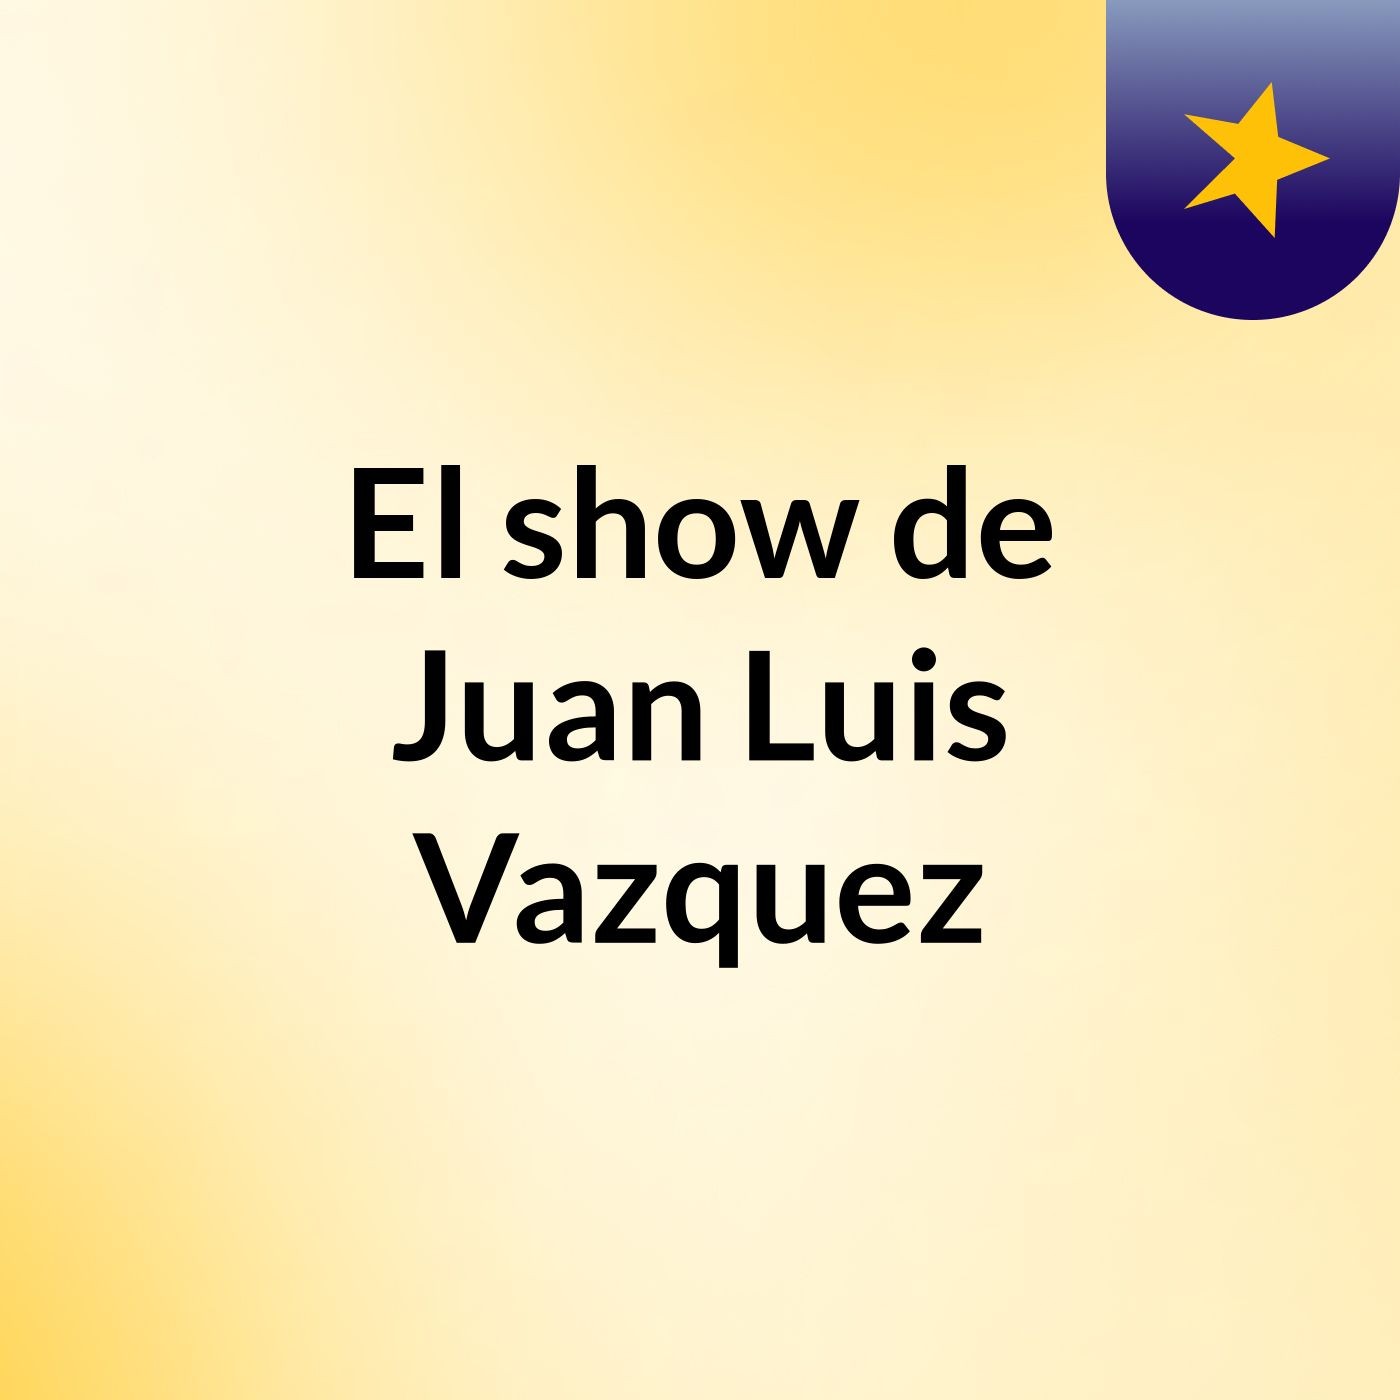 El show de Juan Luis Vazquez